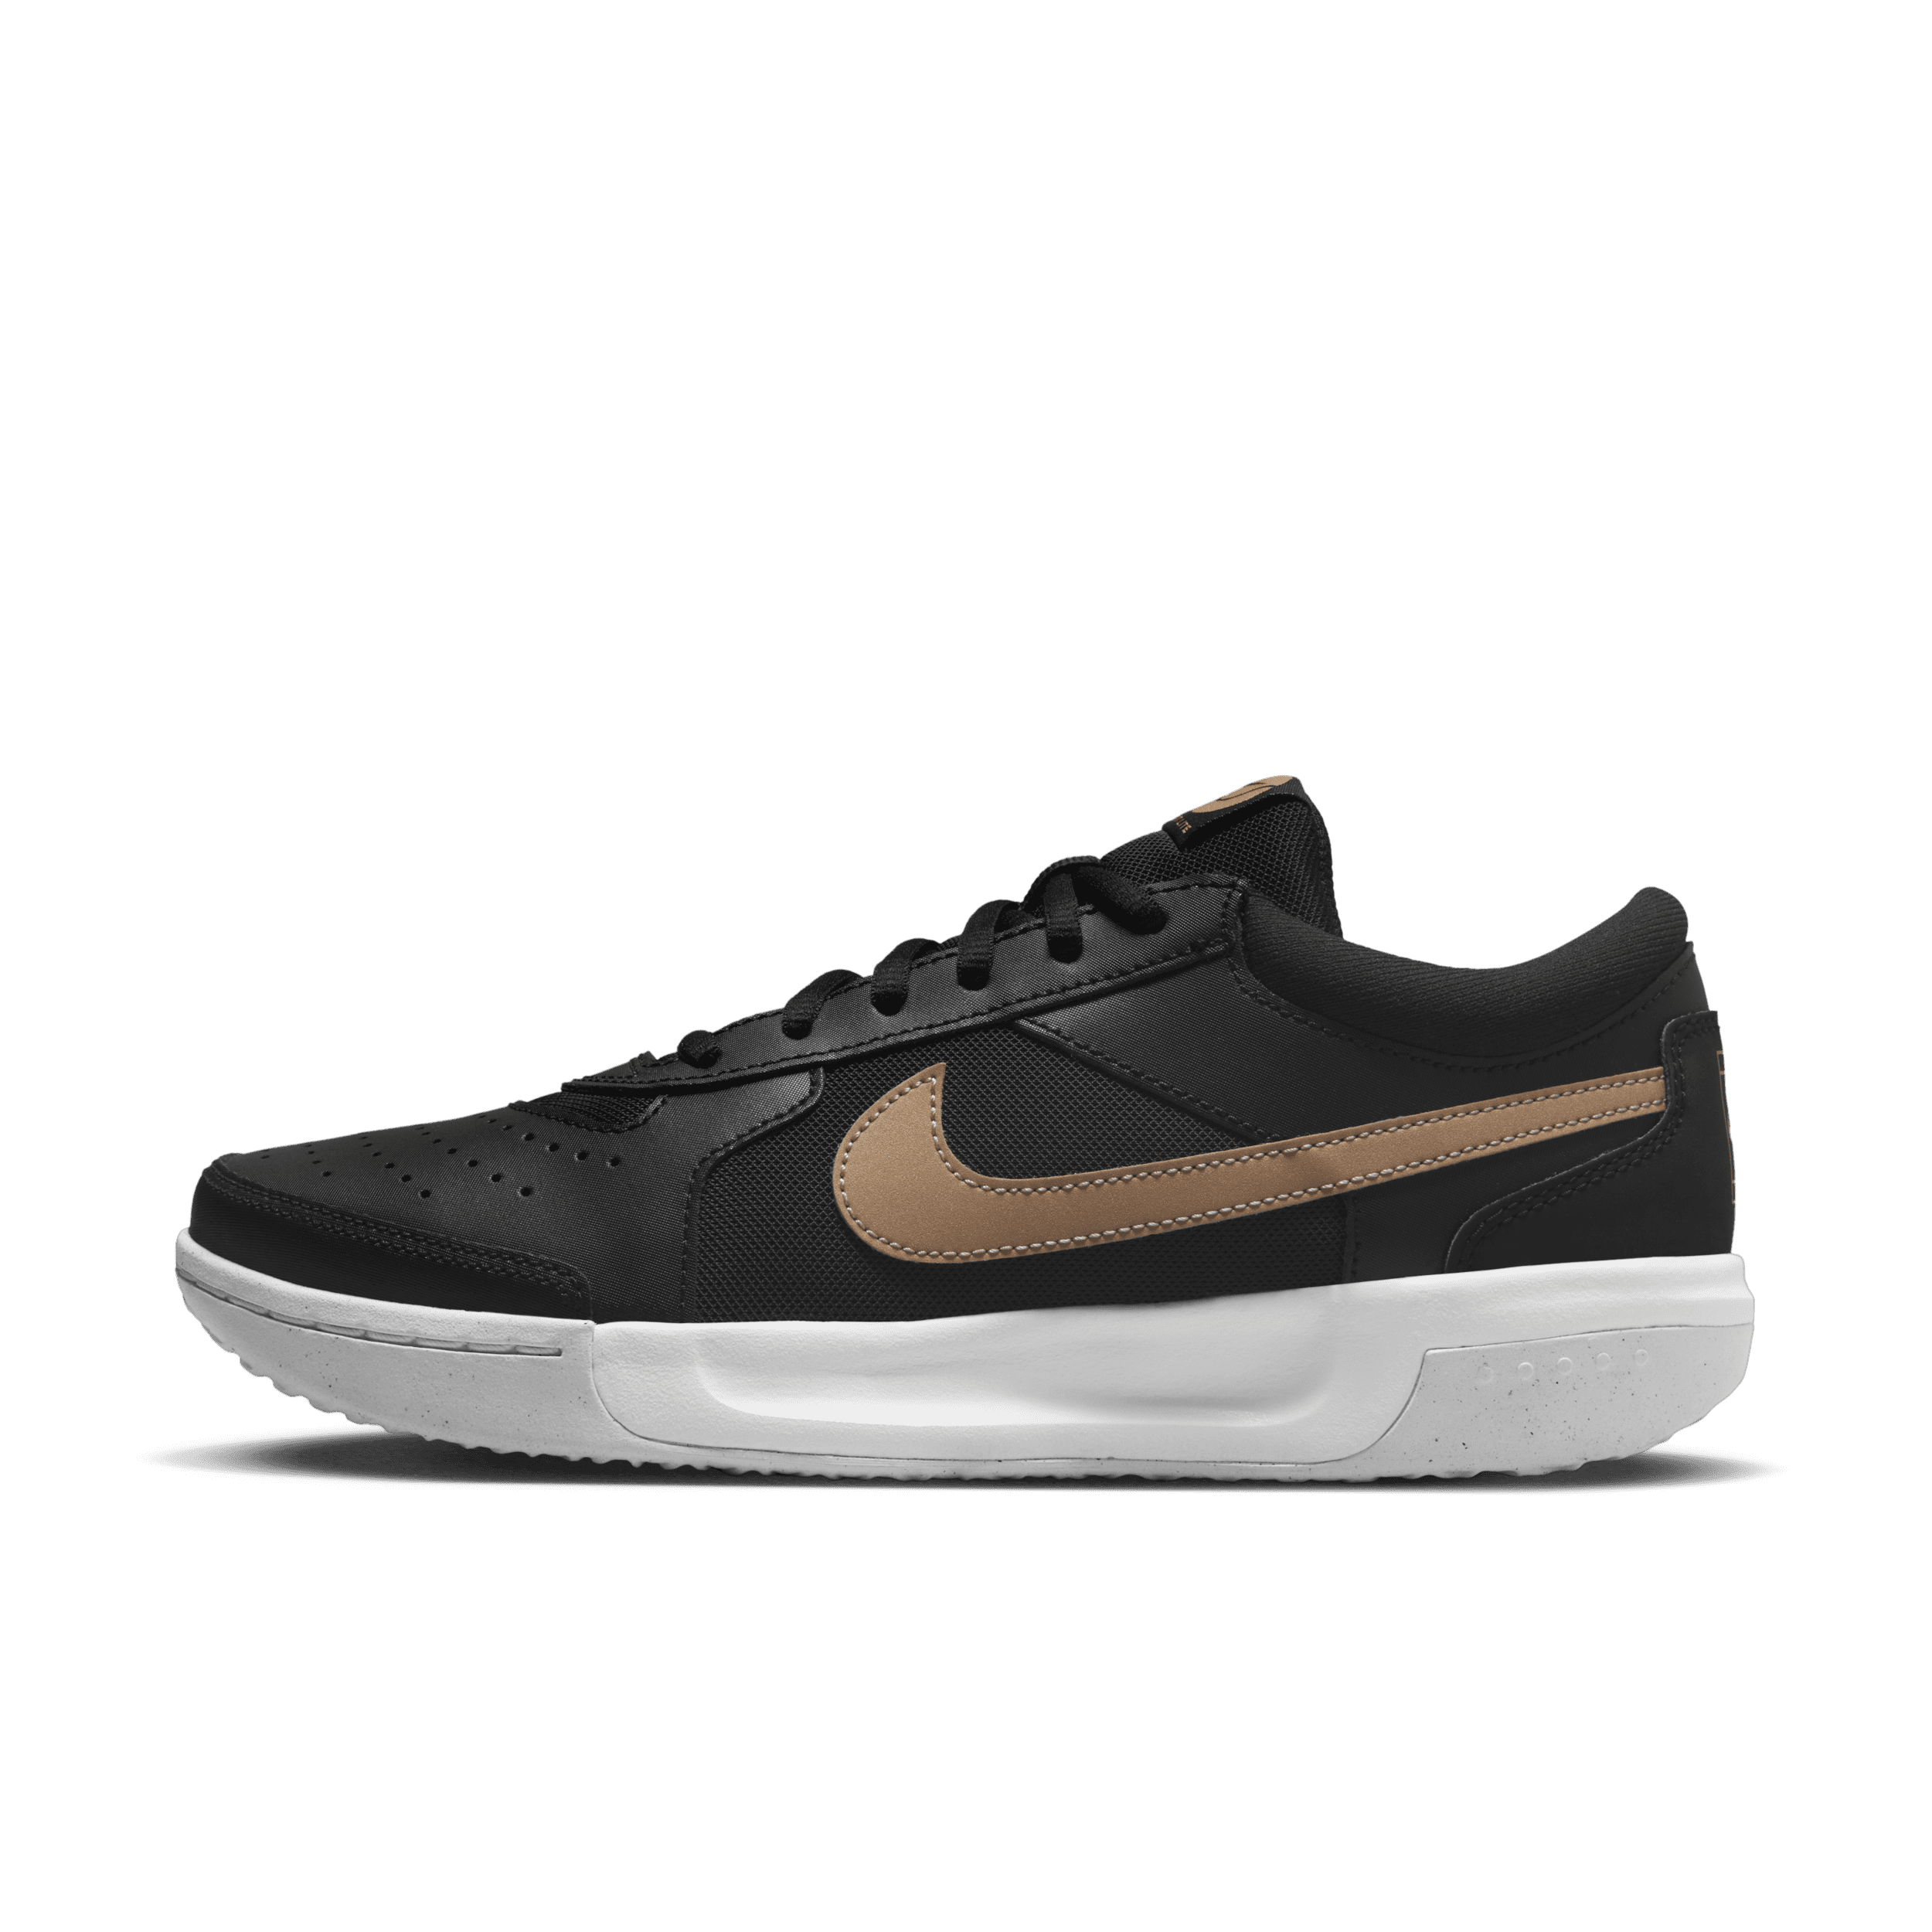 NikeCourt Air Zoom Lite 3 Tennisschoenen voor dames - Zwart